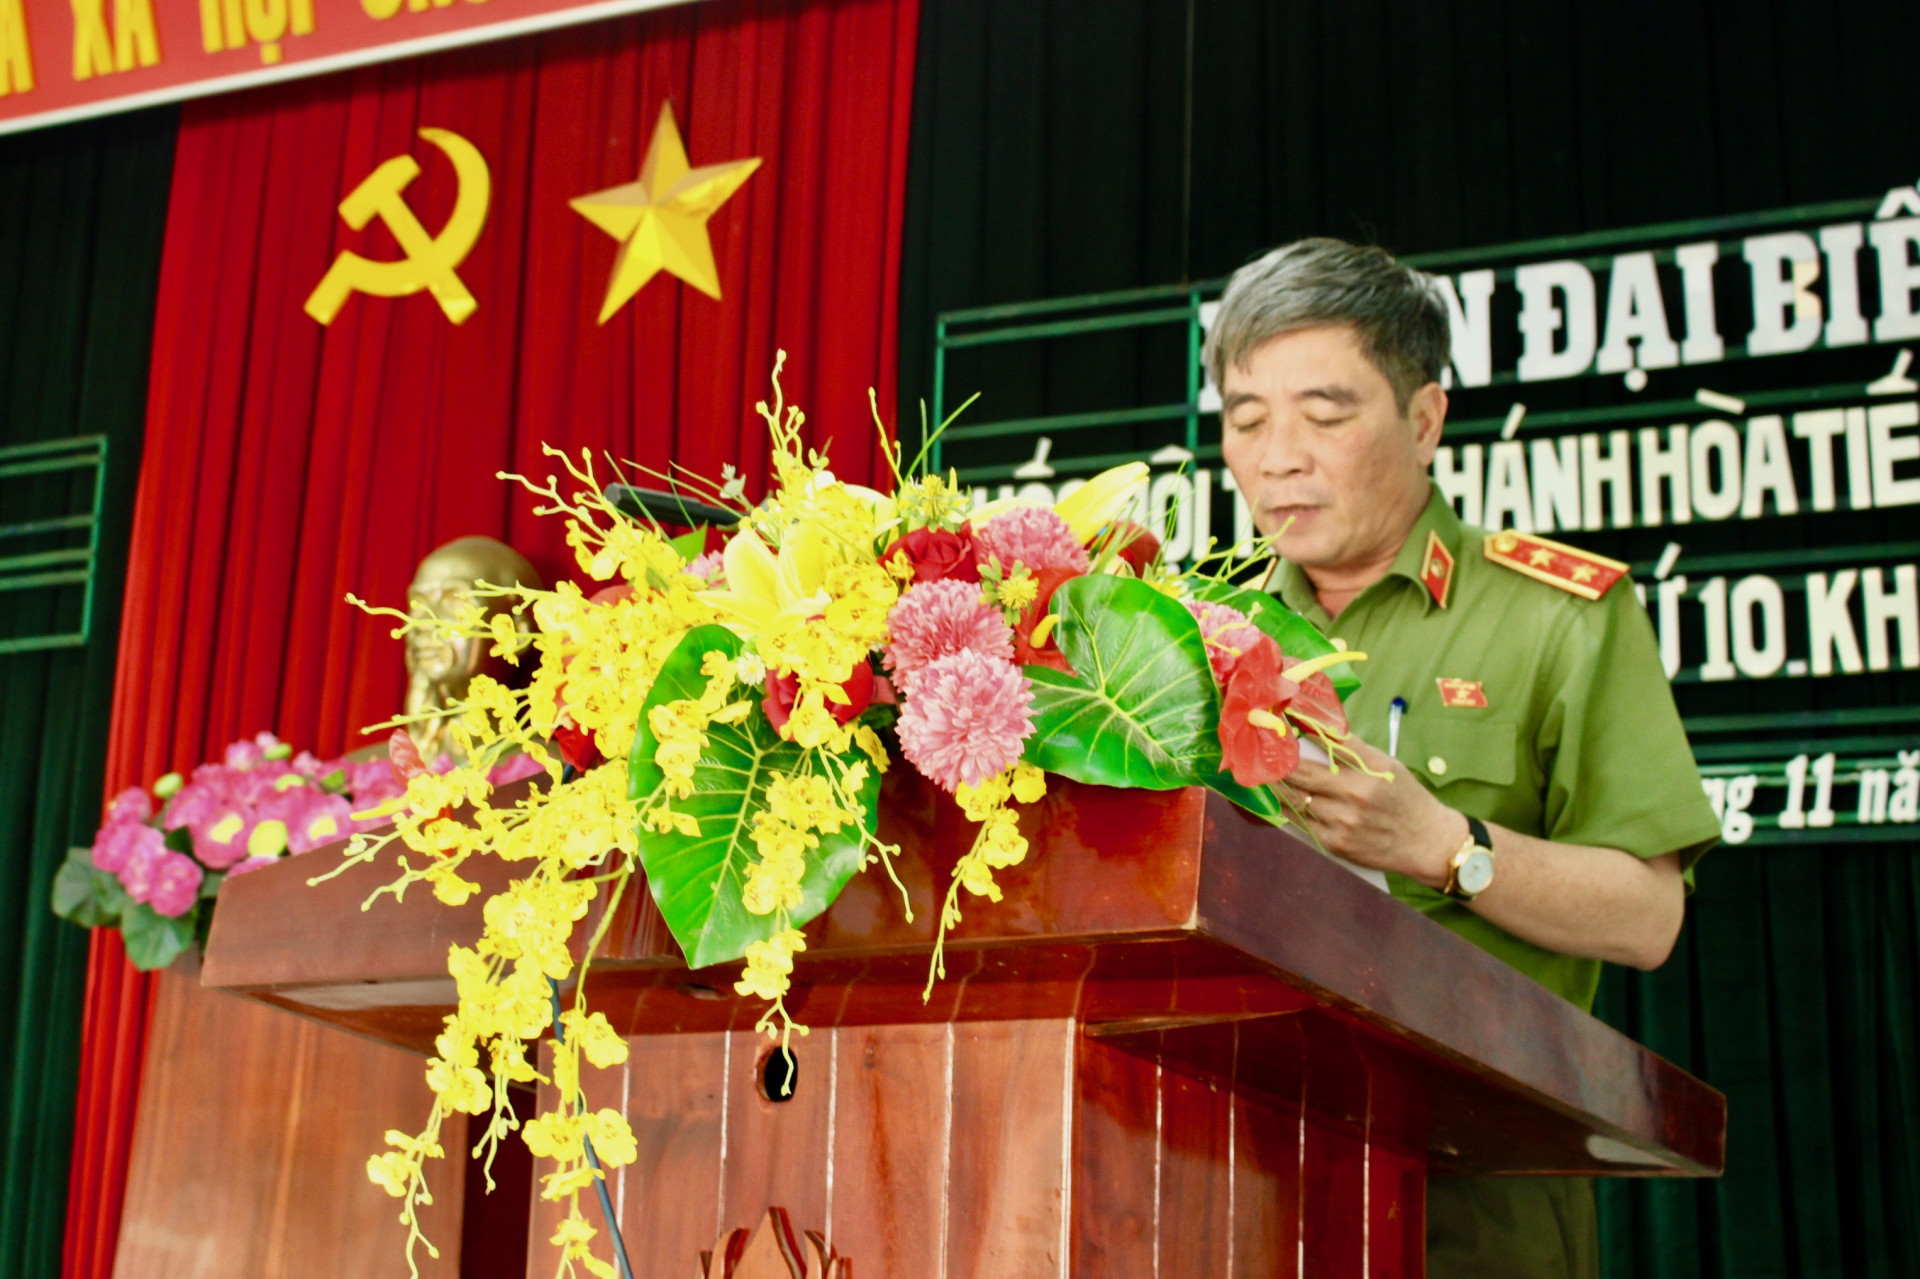 Đạii biểu Trần Ngọc Khánh thông báo đến cử tri huyện Diên Khánh kết quả kỳ họp thứ 10, Quốc hội khóa XIV